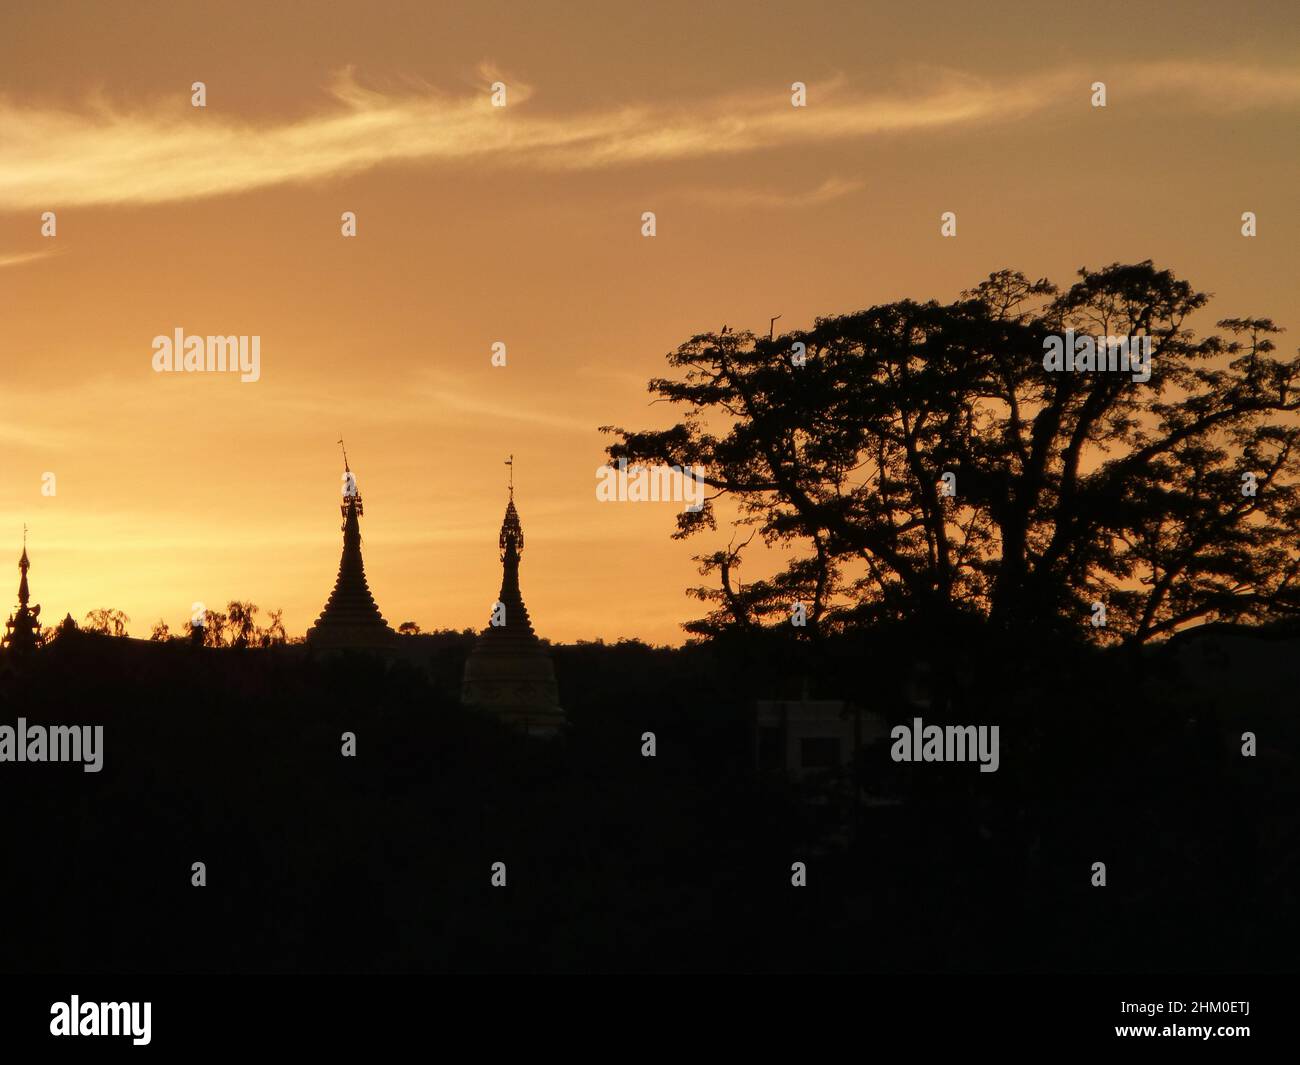 Myanmar Birmania - bella scena durante il tramonto in ombra con un albero in thr davanti e due stupa nella parte posteriore Foto Stock